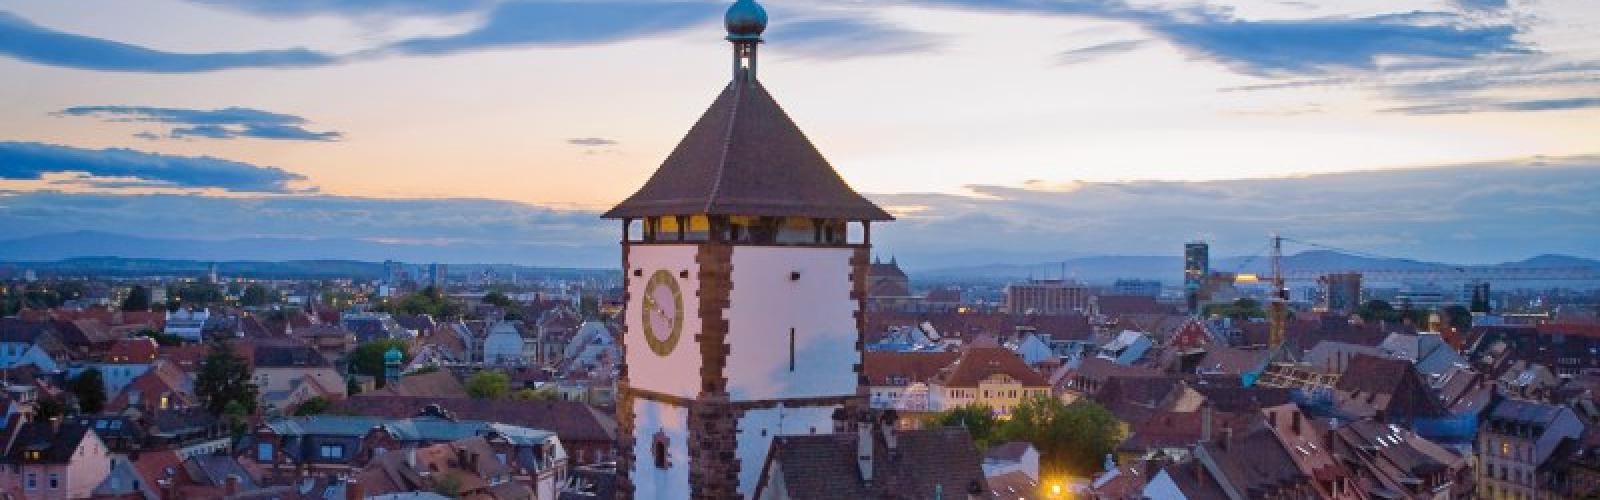 Freiburg Schwabentor, Blick über die Dächer der Stadt